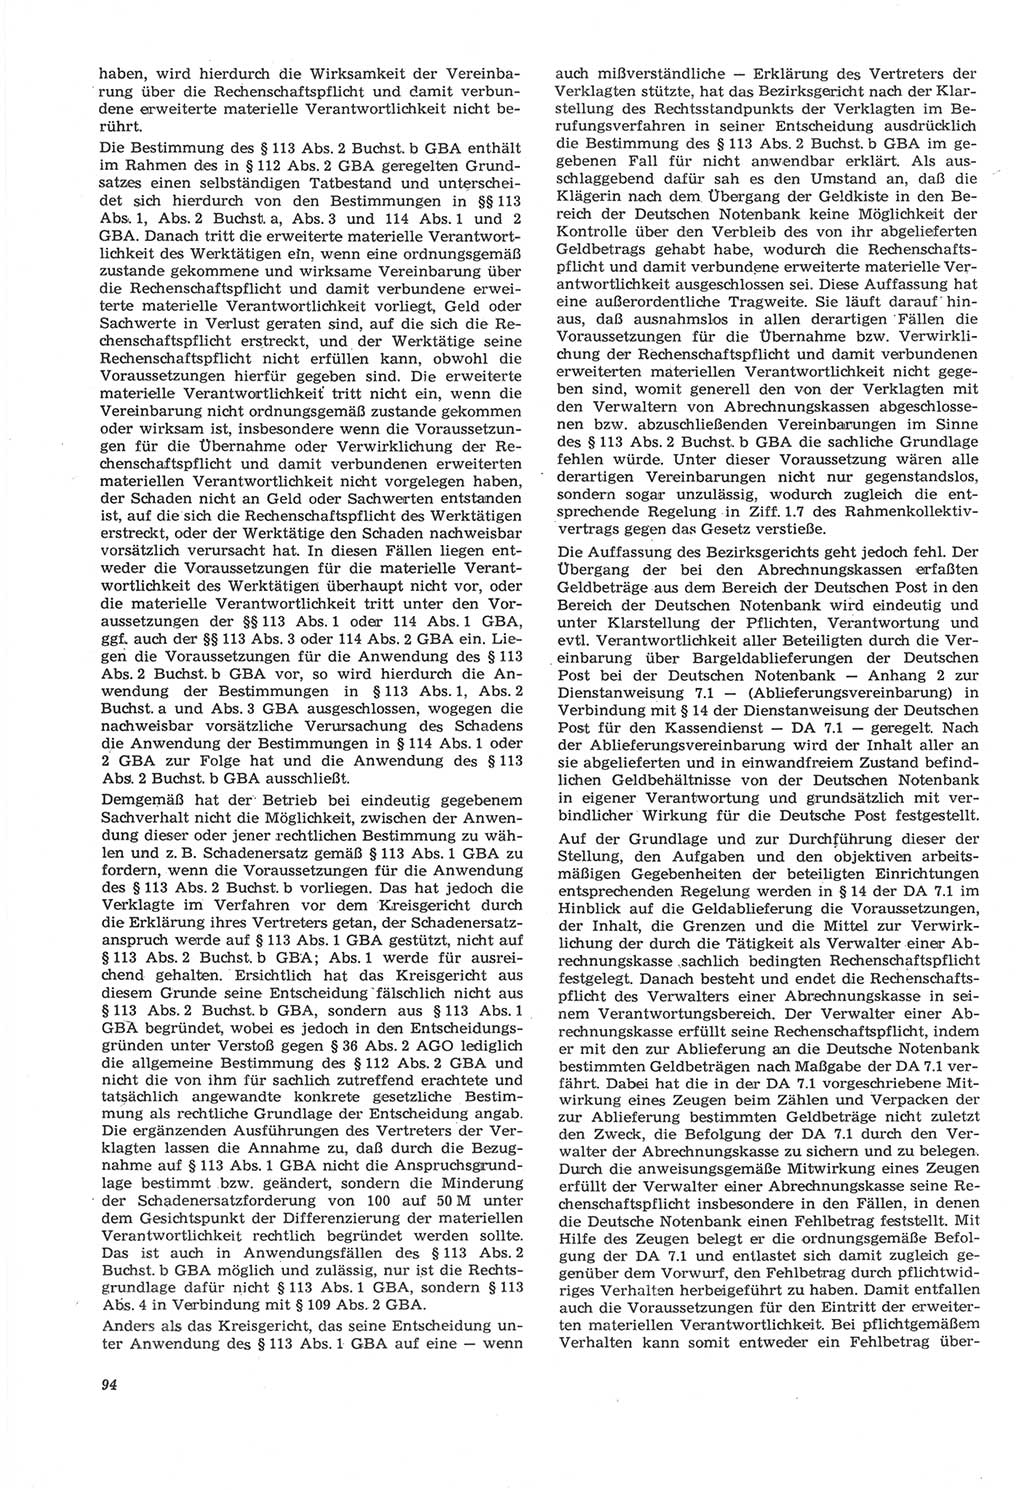 Neue Justiz (NJ), Zeitschrift für Recht und Rechtswissenschaft [Deutsche Demokratische Republik (DDR)], 22. Jahrgang 1968, Seite 94 (NJ DDR 1968, S. 94)